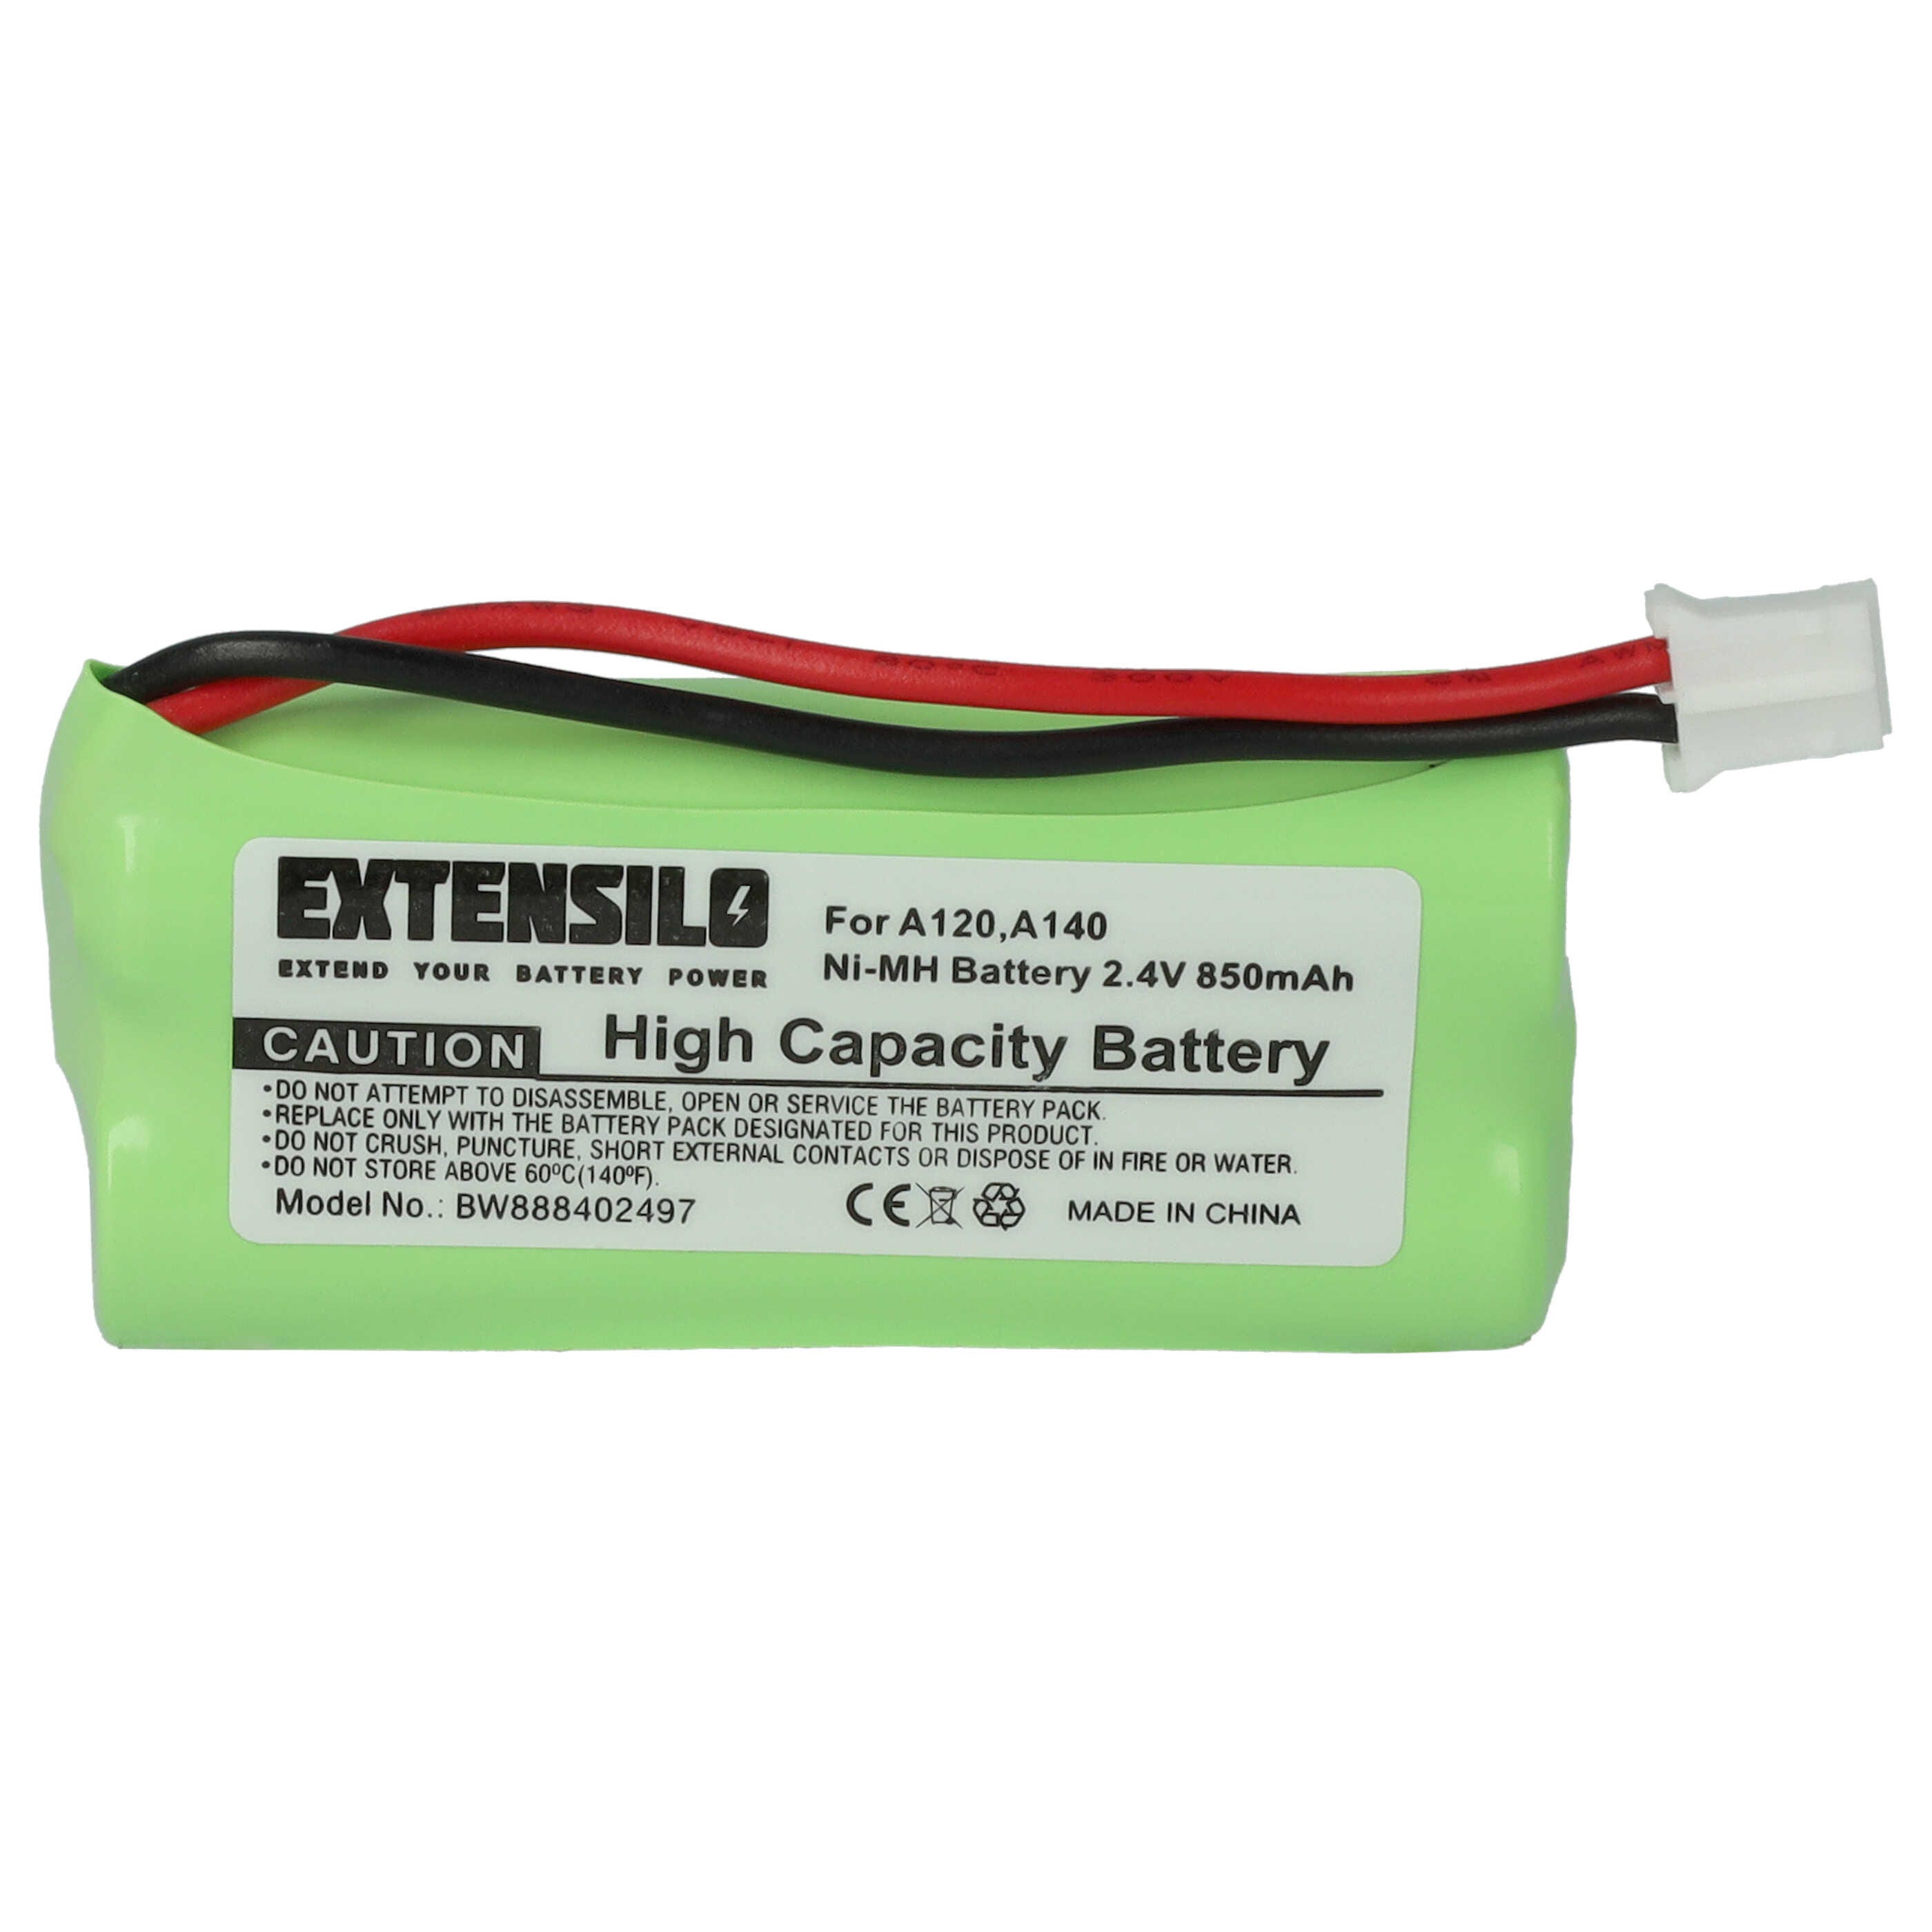 EXTENSILO Batterie compatible avec Siemens Gigaset AS145, AS14, AS15,  AS140, AS140 DUO, AL14H téléphone fixe sans fil (850mAh, 2,4V, NiMH)